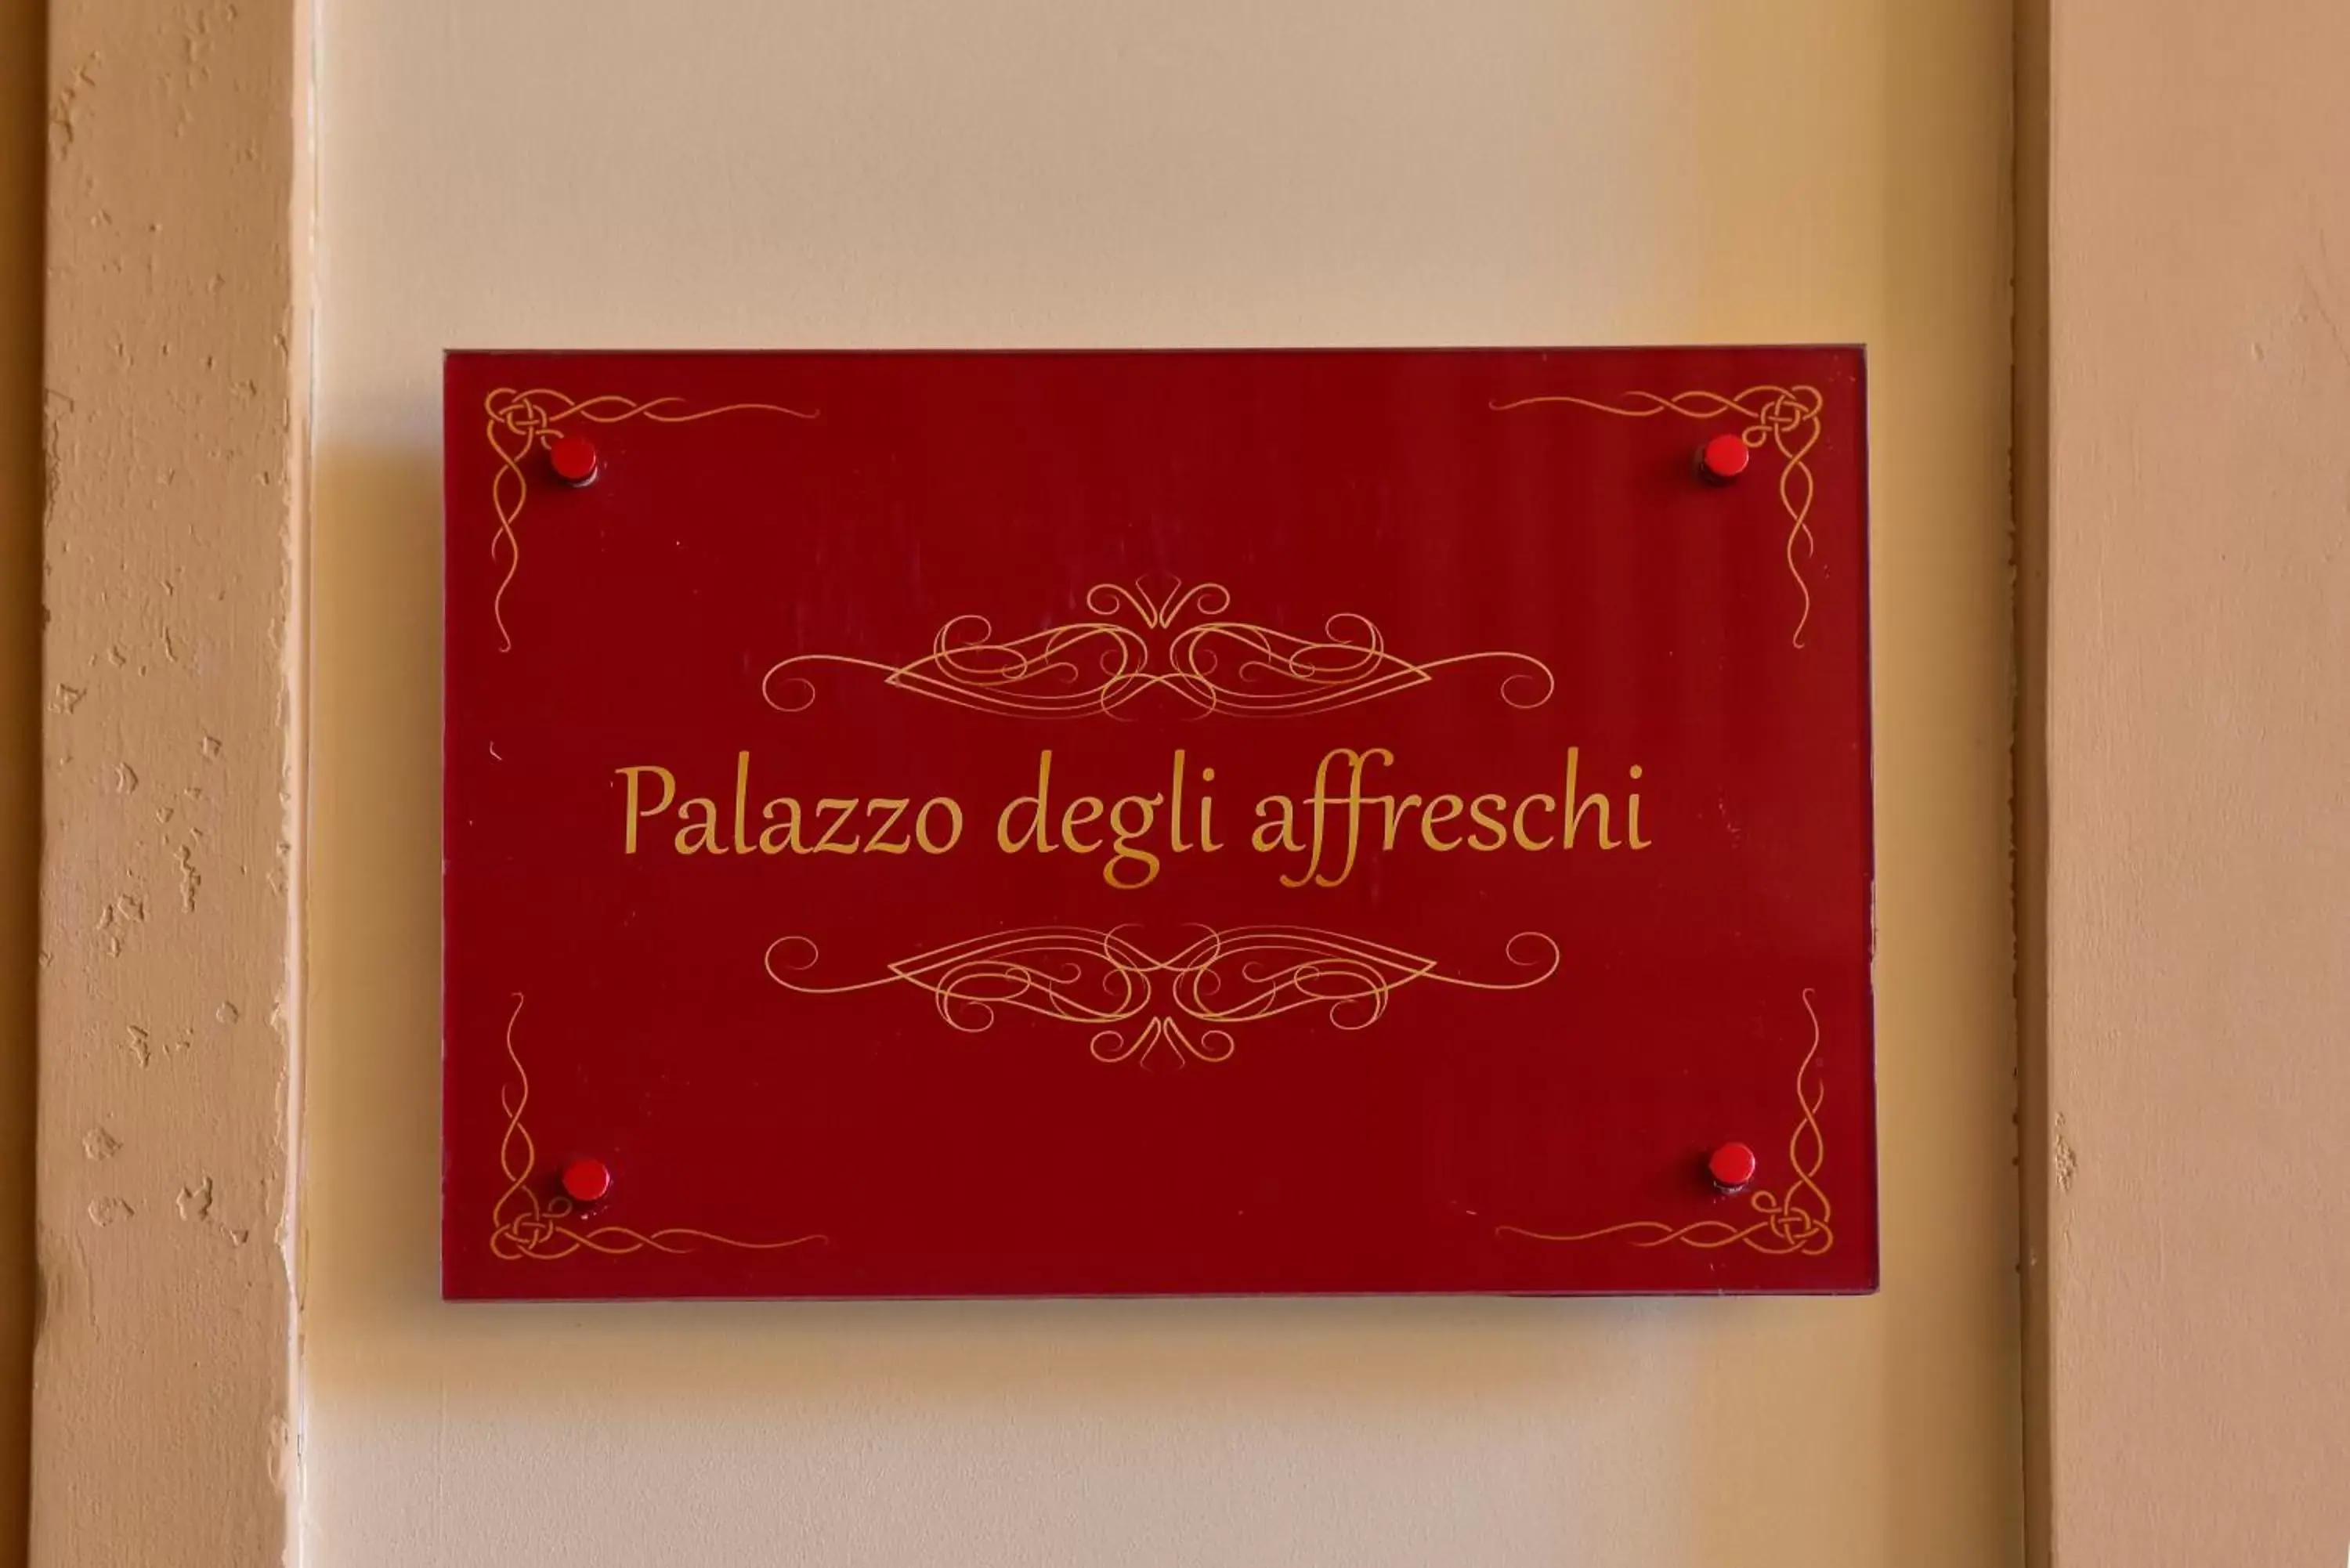 Property logo or sign in Palazzo degli Affreschi